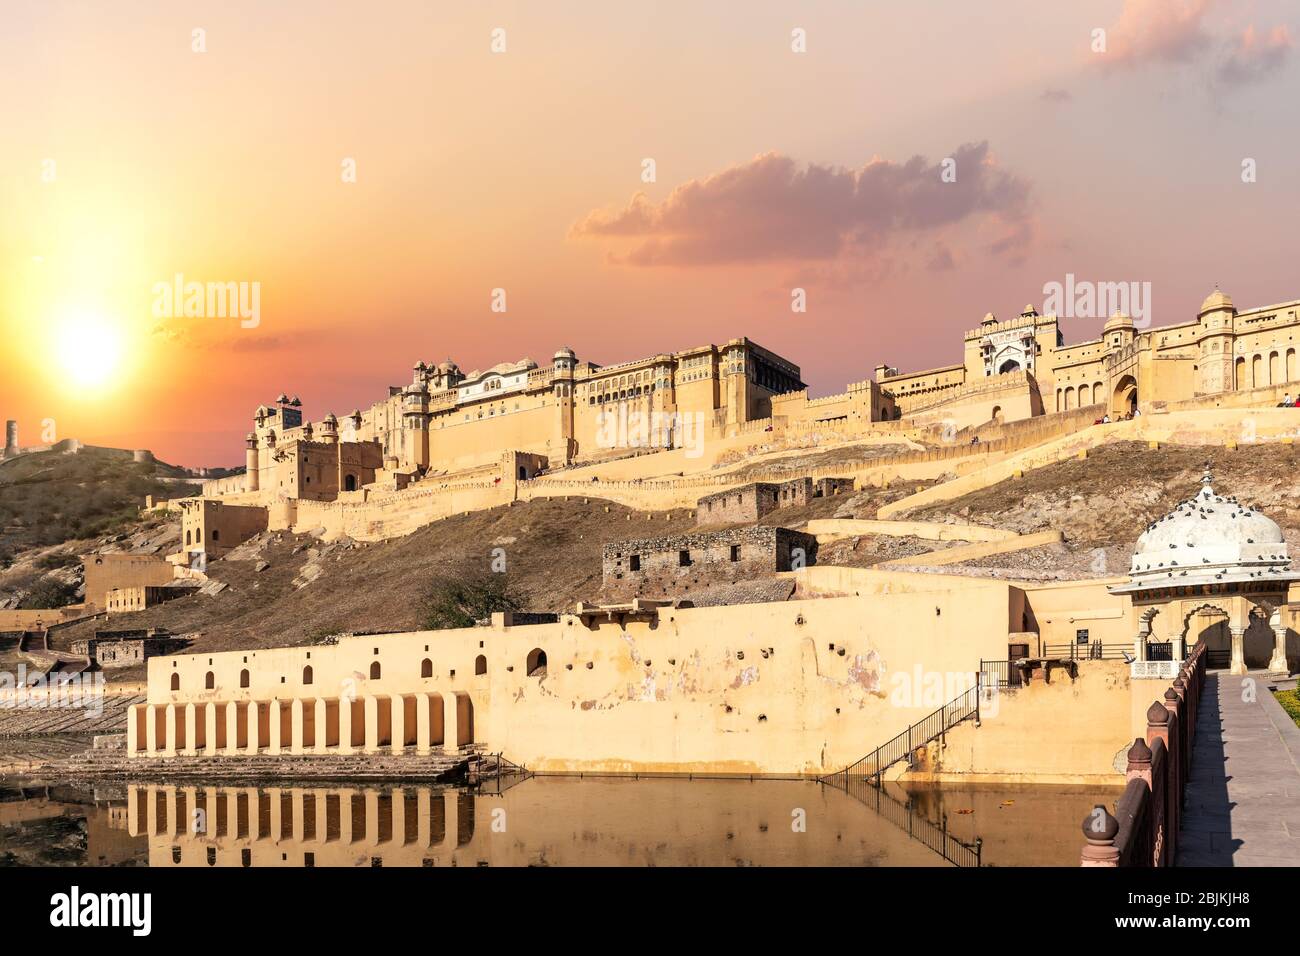 Fort ambré de l'Inde, Jaipur, vue complète au coucher du soleil. Banque D'Images